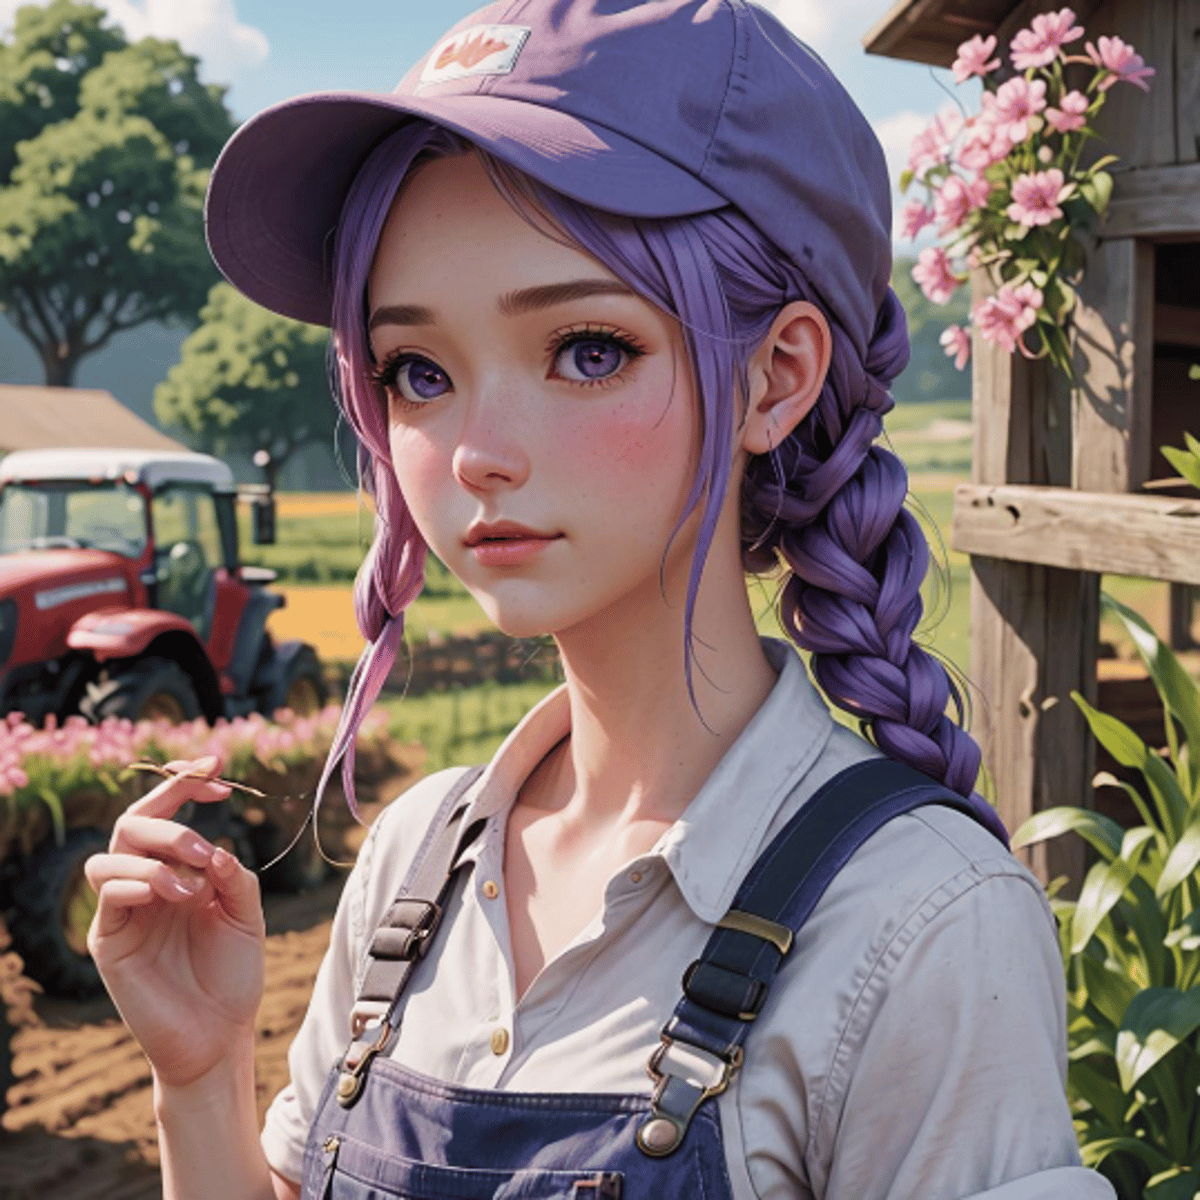 Farmer girl